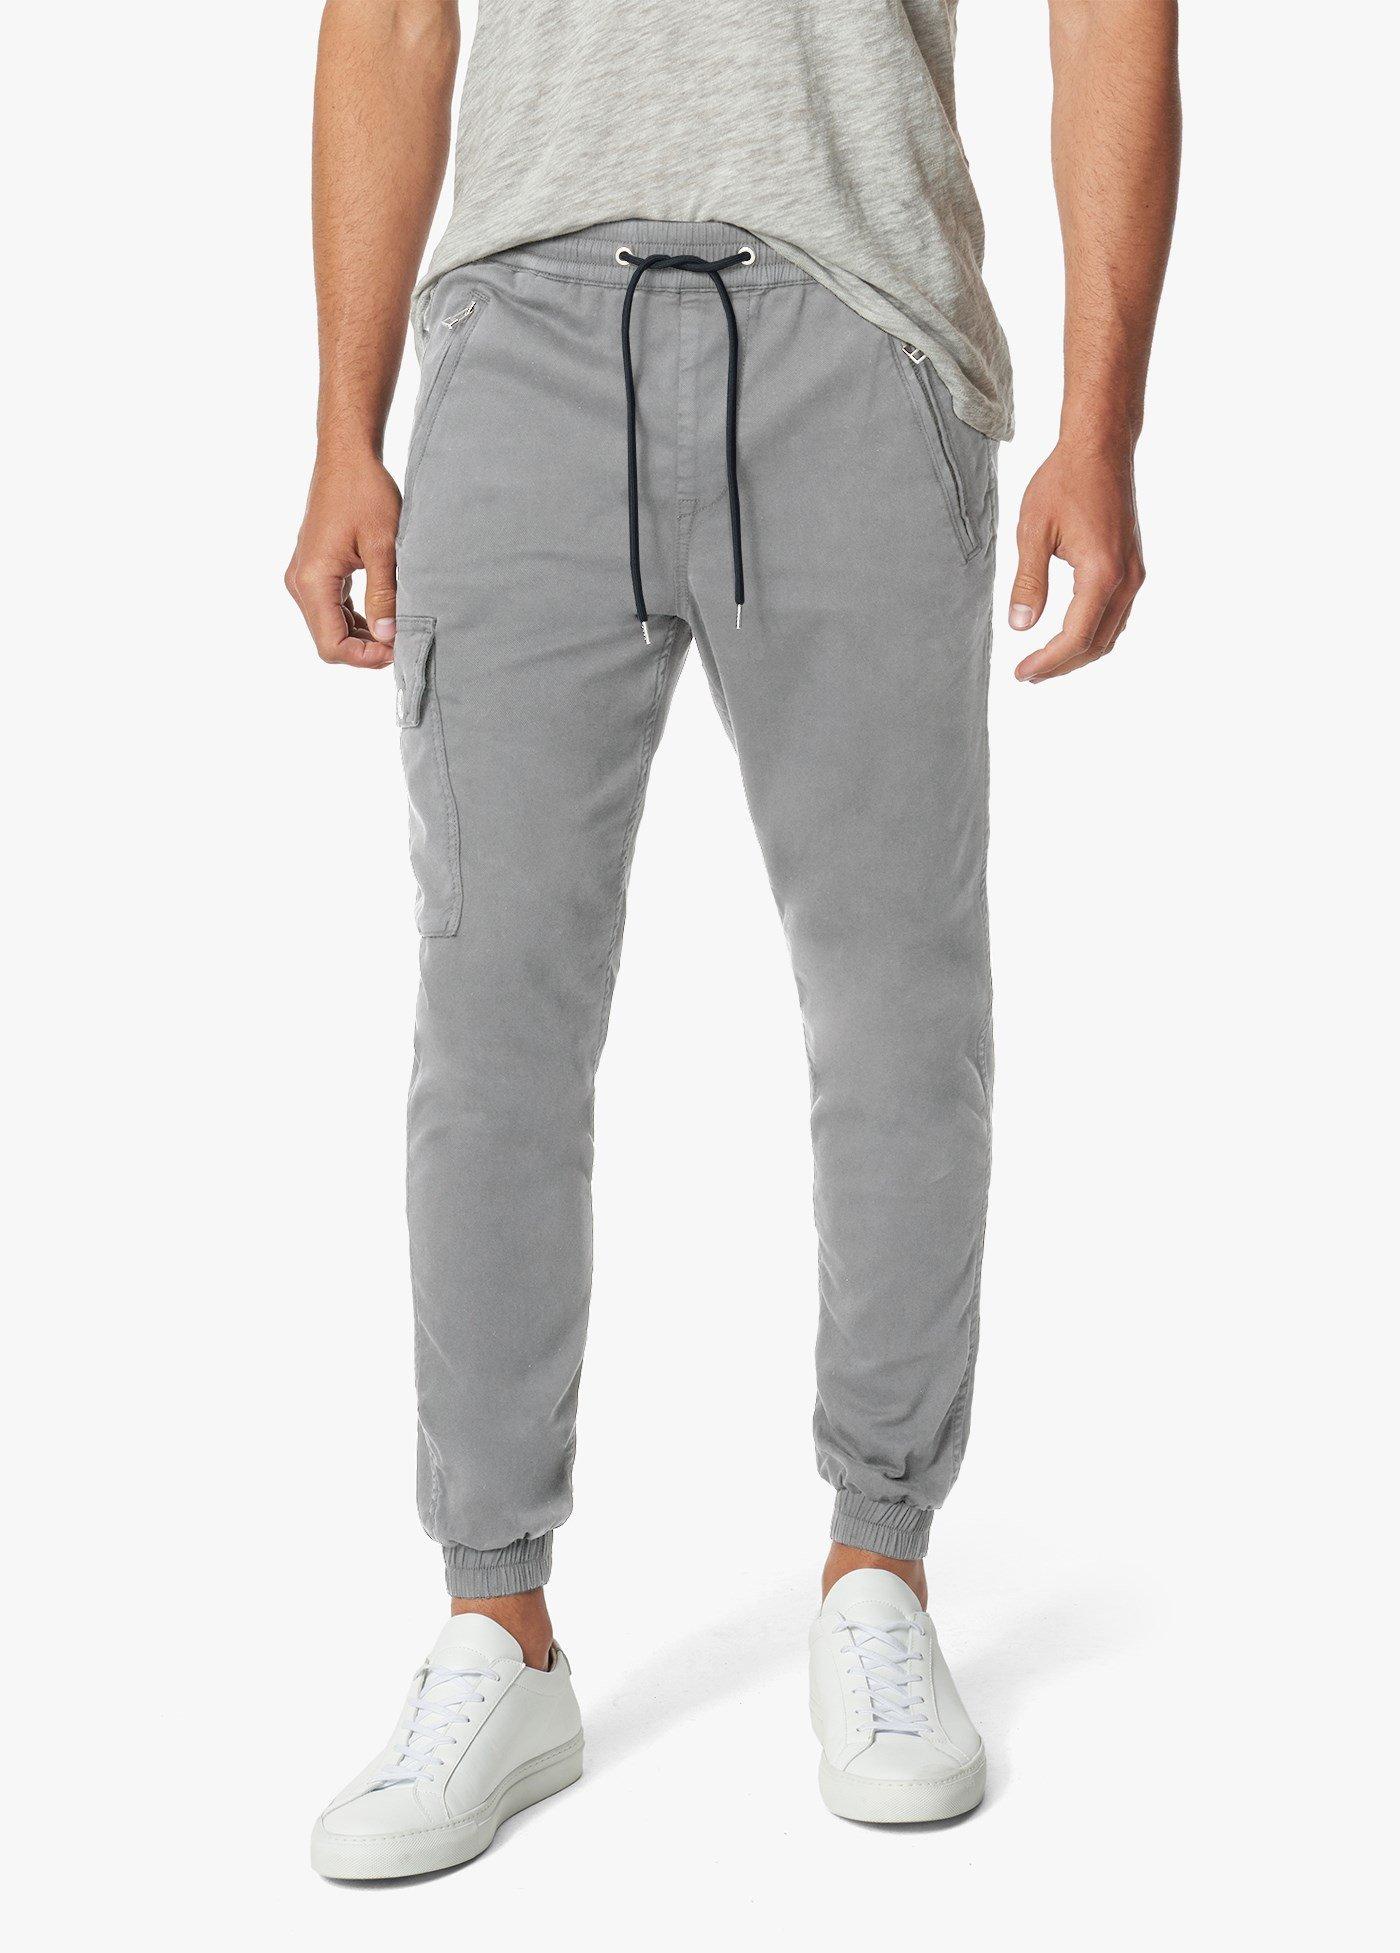 Joe's Jeans Cotton Drop Yoke Cargo JOGGER in Gray for Men - Lyst